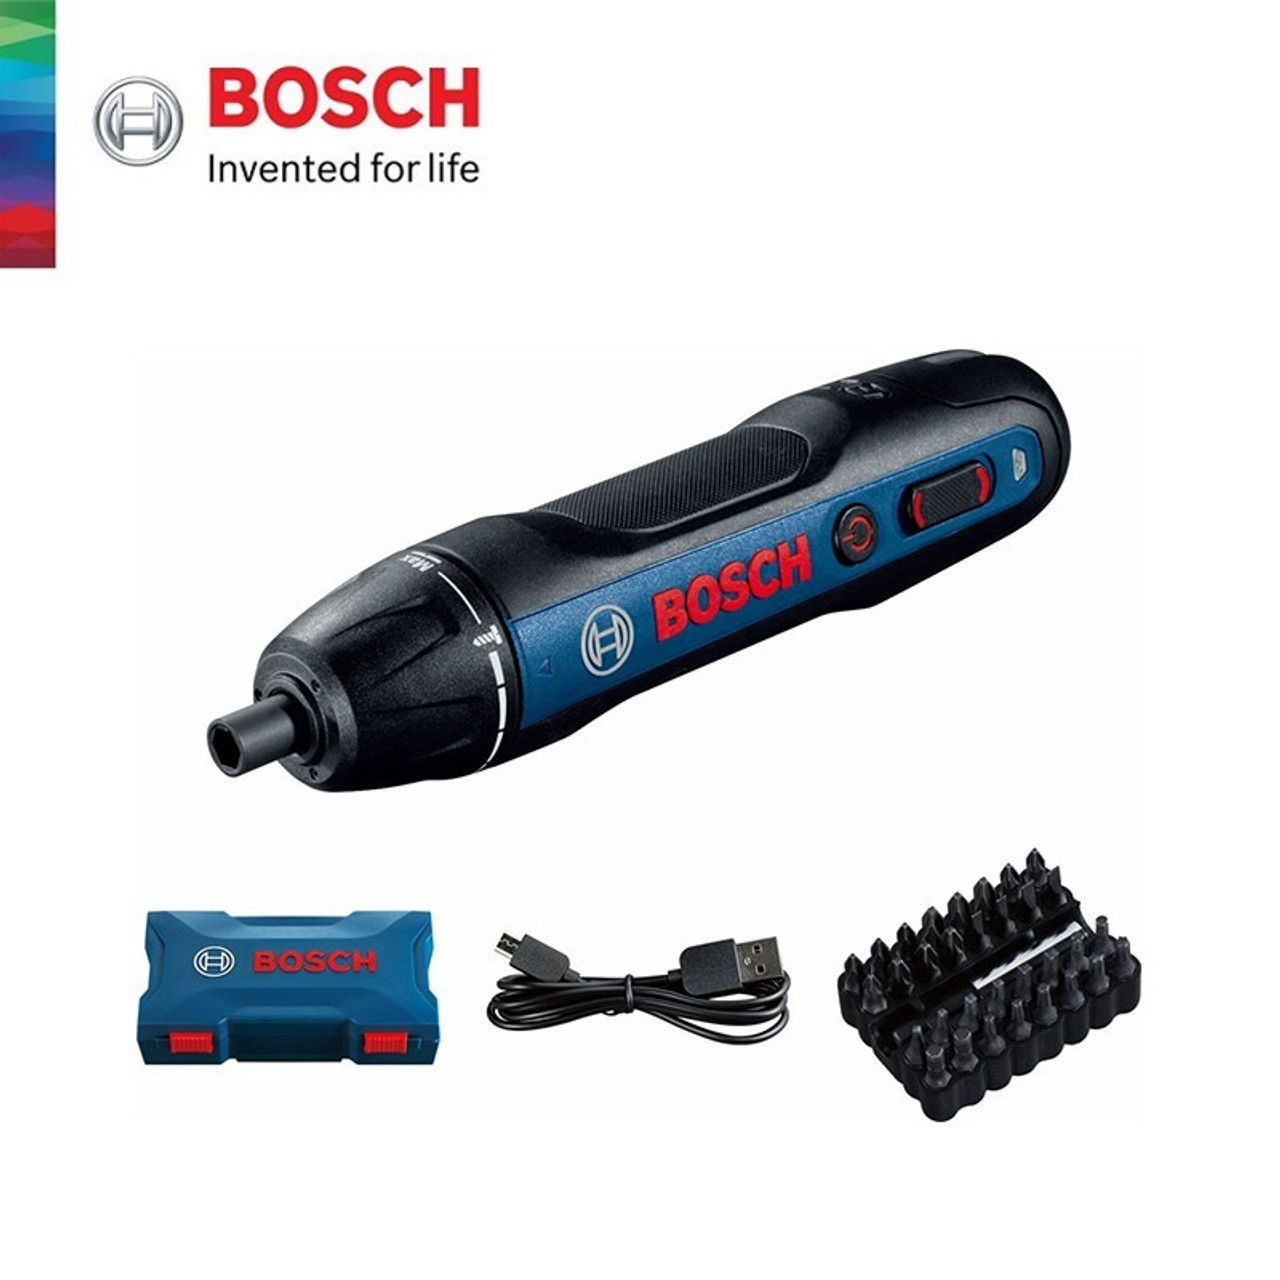 BOSCH GO - El Destornillador de uso profesional - Bosch go 2